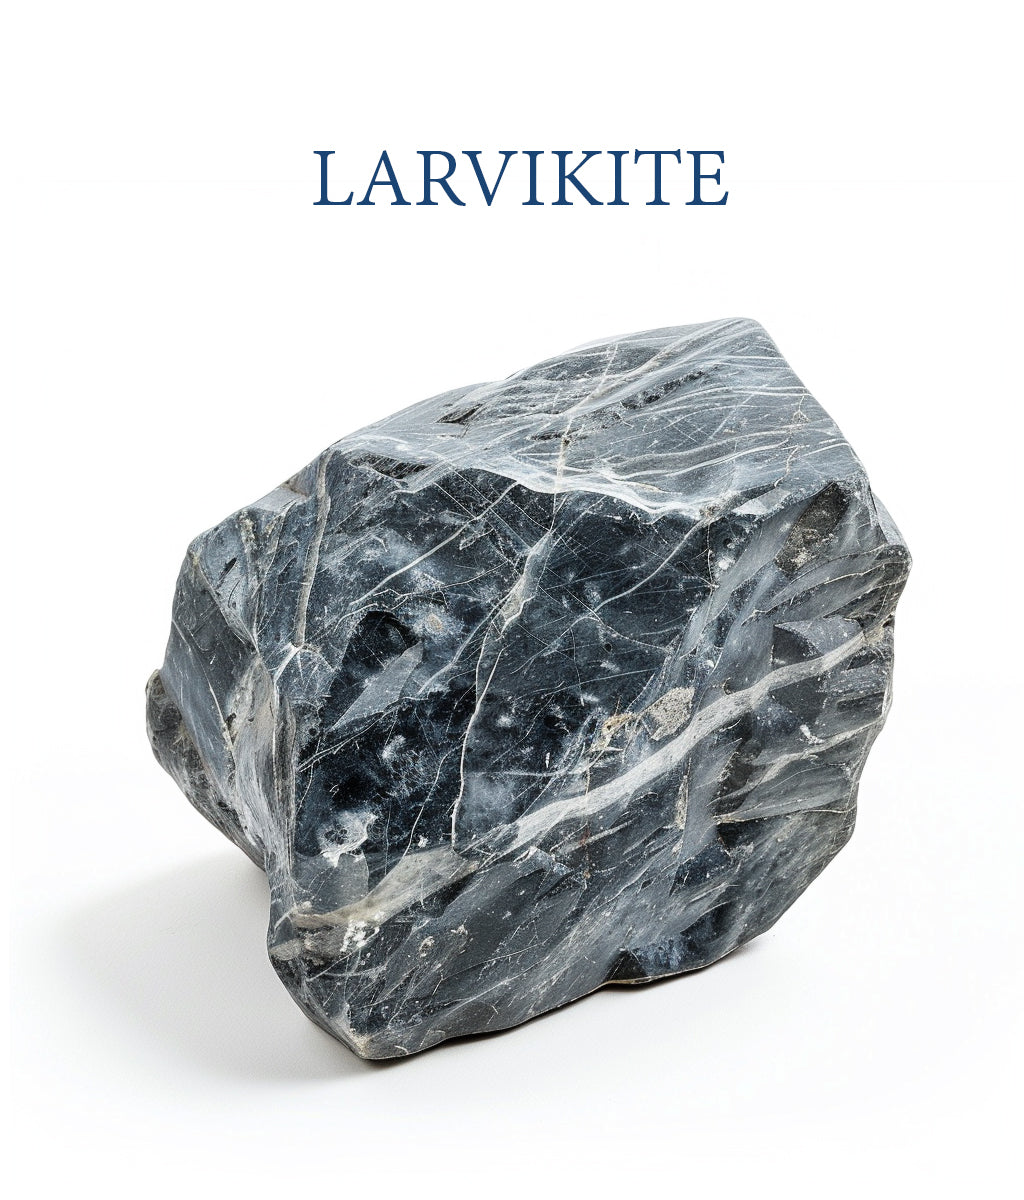 Larvikite